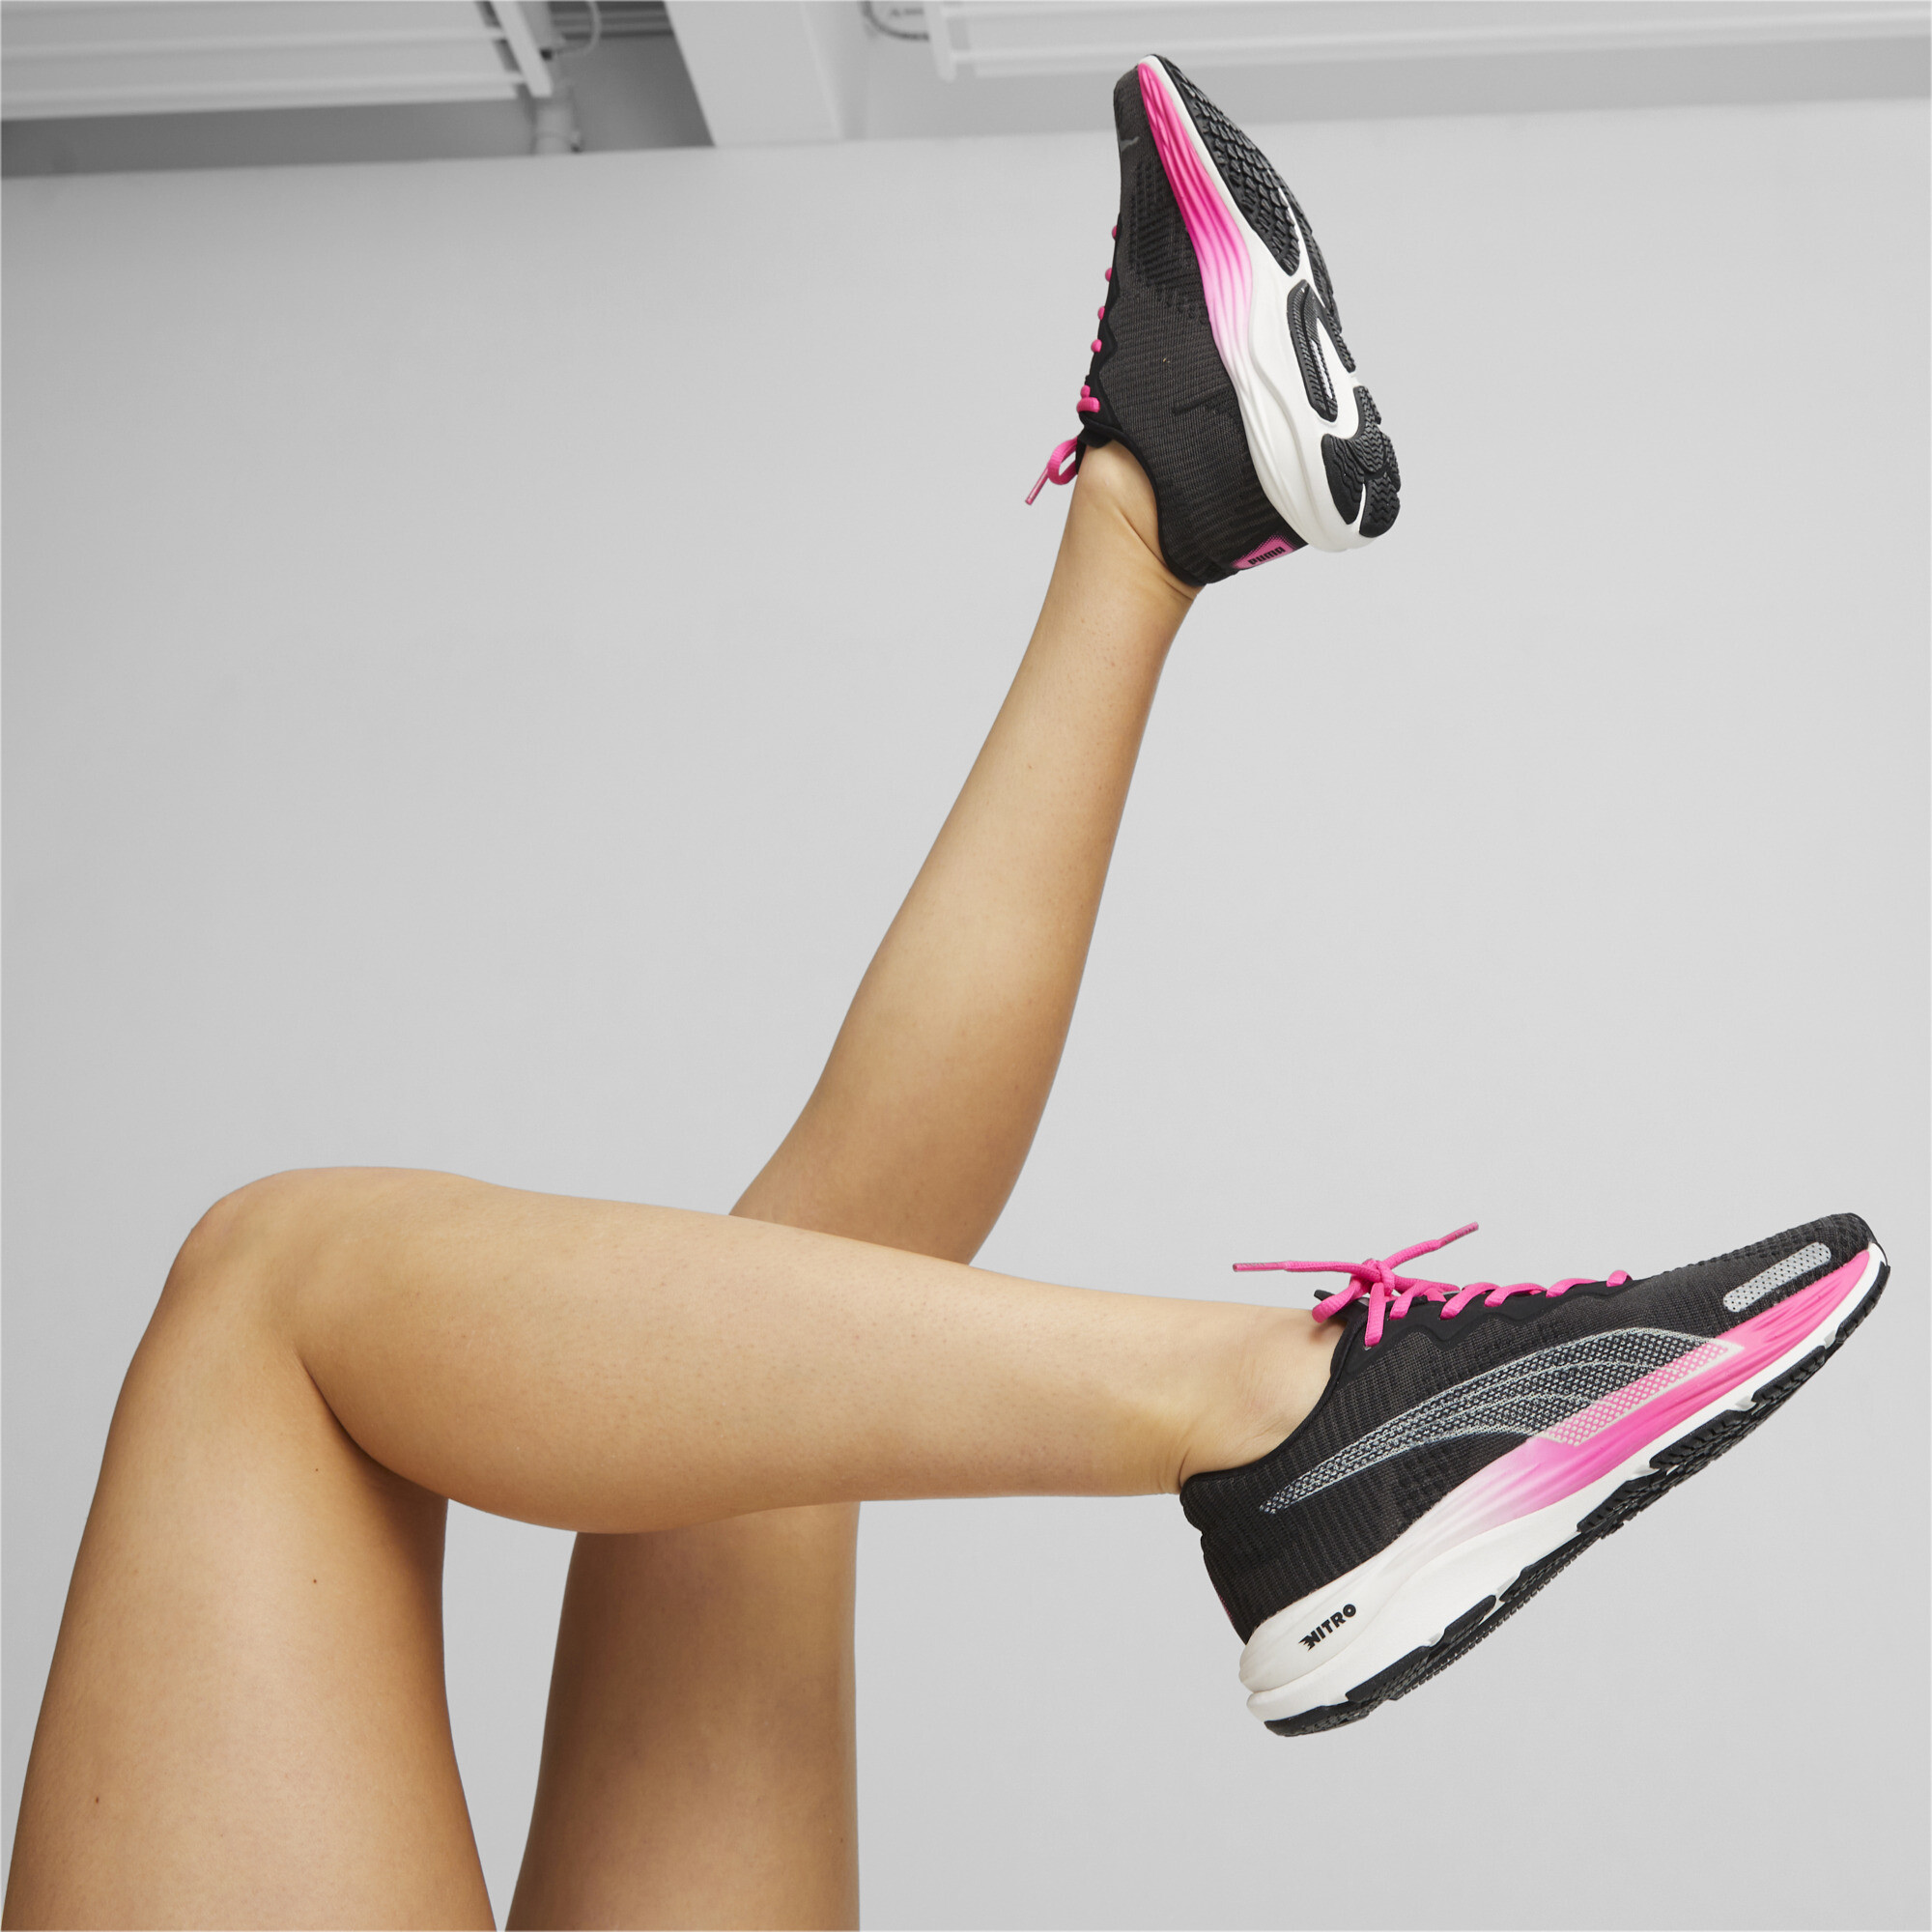 Women's PUMA Velocity NITRO 2 Fade Running Shoes Women In Black, Size EU 39